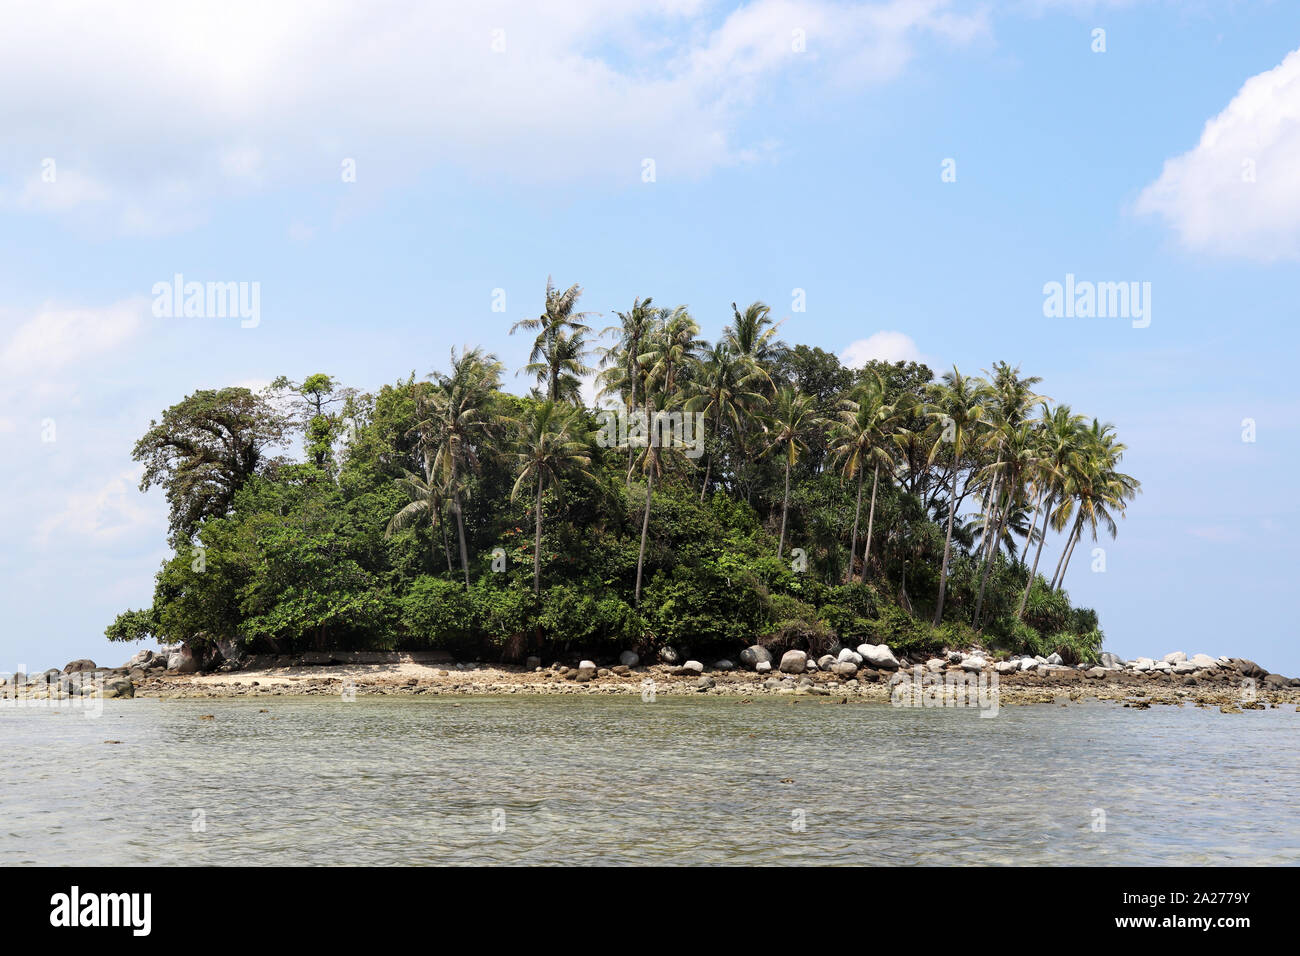 L'île tropical avec des cocotiers dans un océan, vue pittoresque de l'eau calme. Paradis marin avec ciel bleu et nuages blancs Banque D'Images